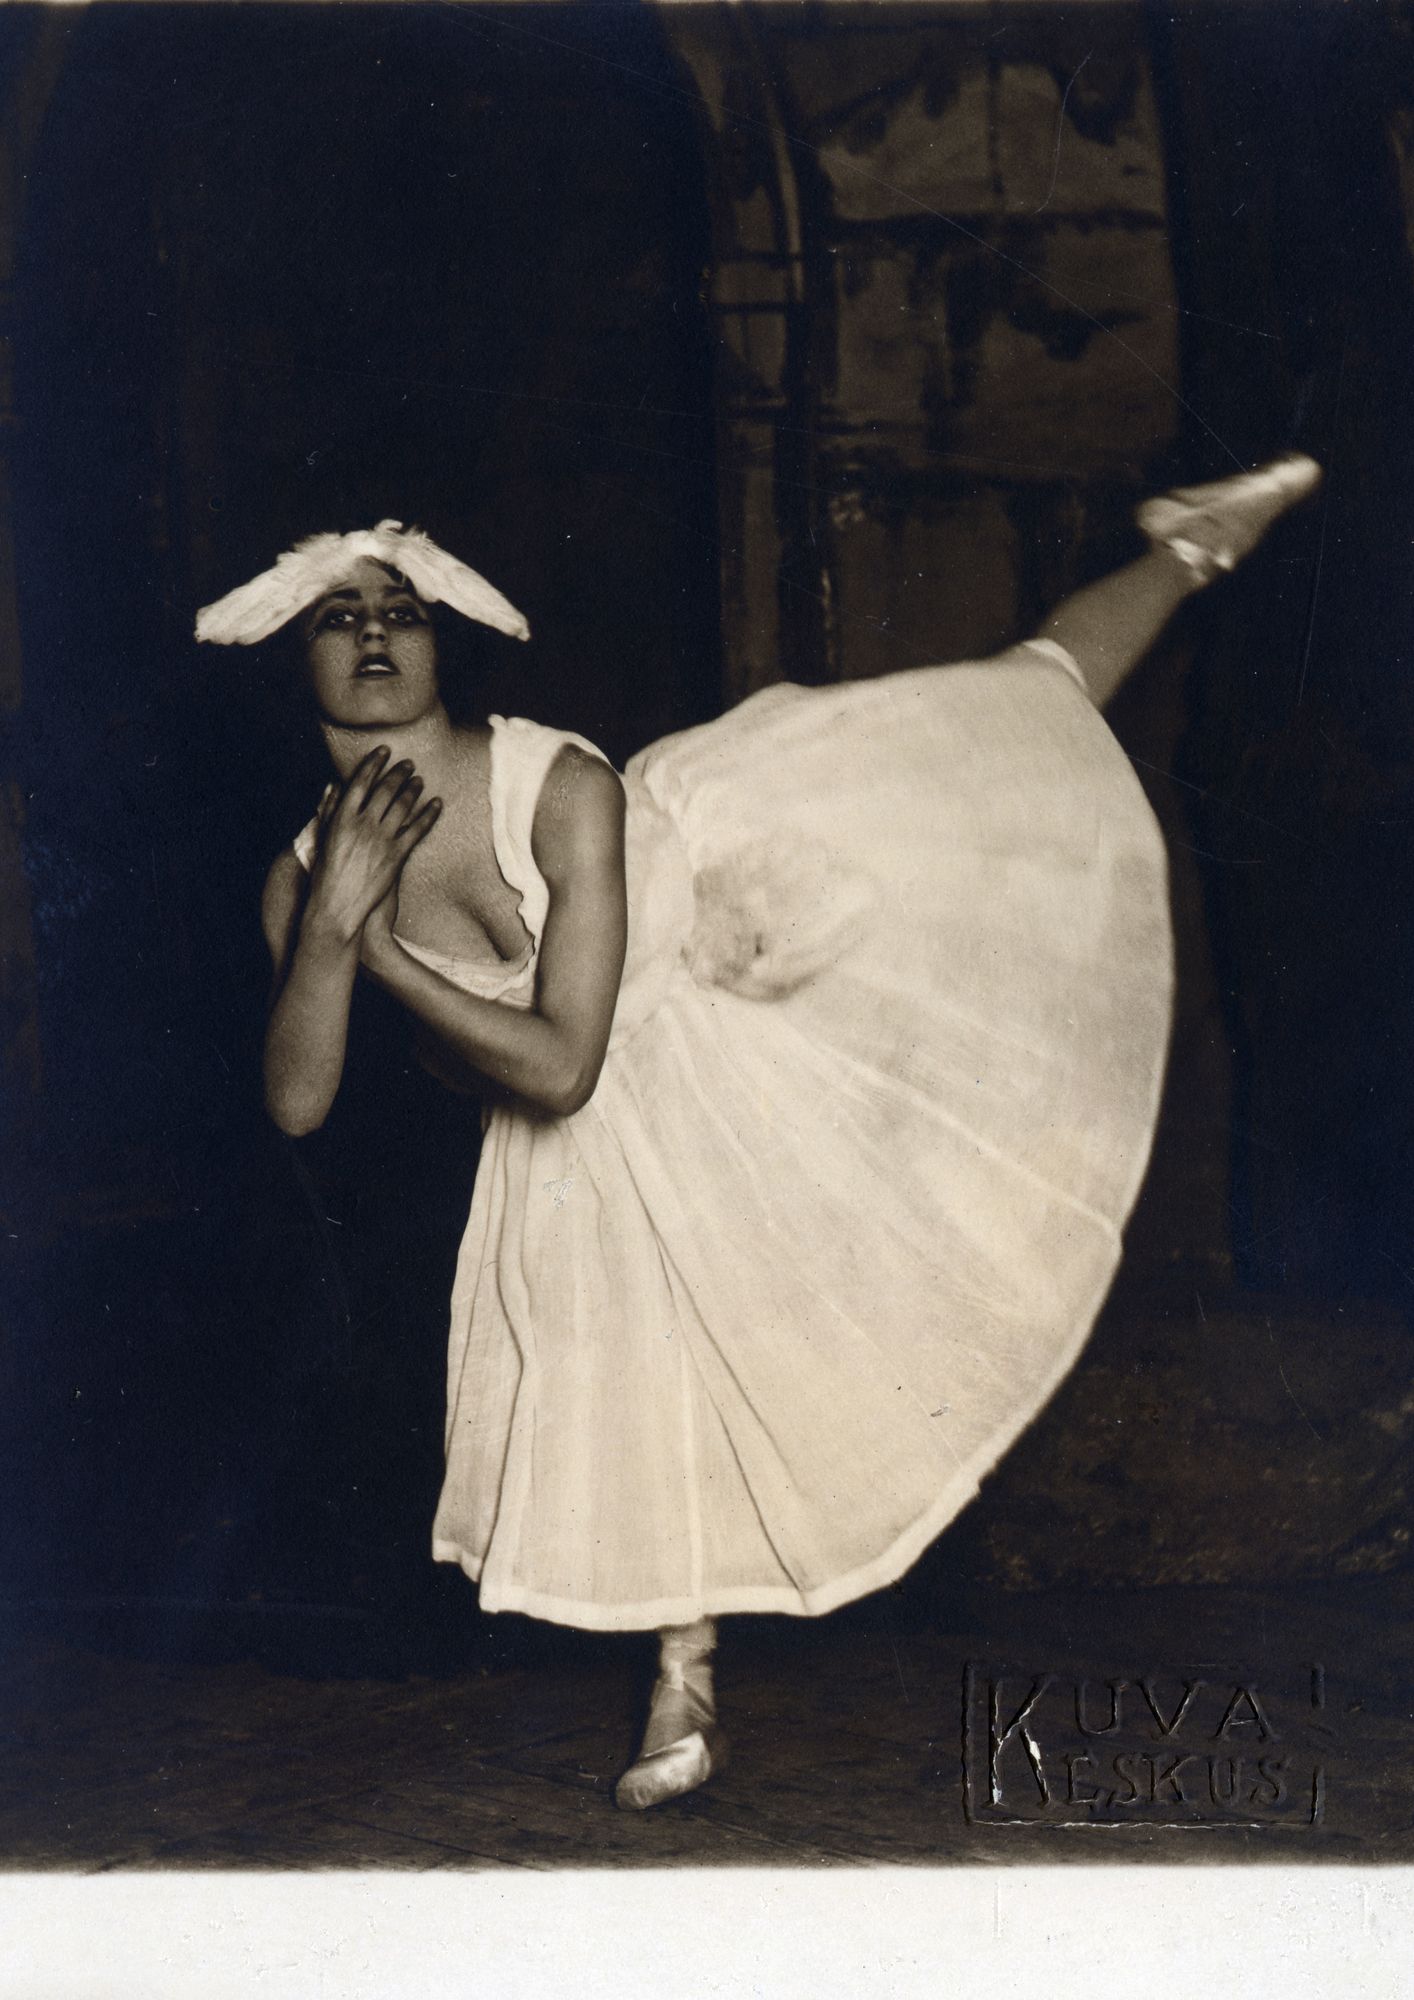 Ensimmäisen Joutsenlammen päätähti oli tanssijatar Mary Paischeff.